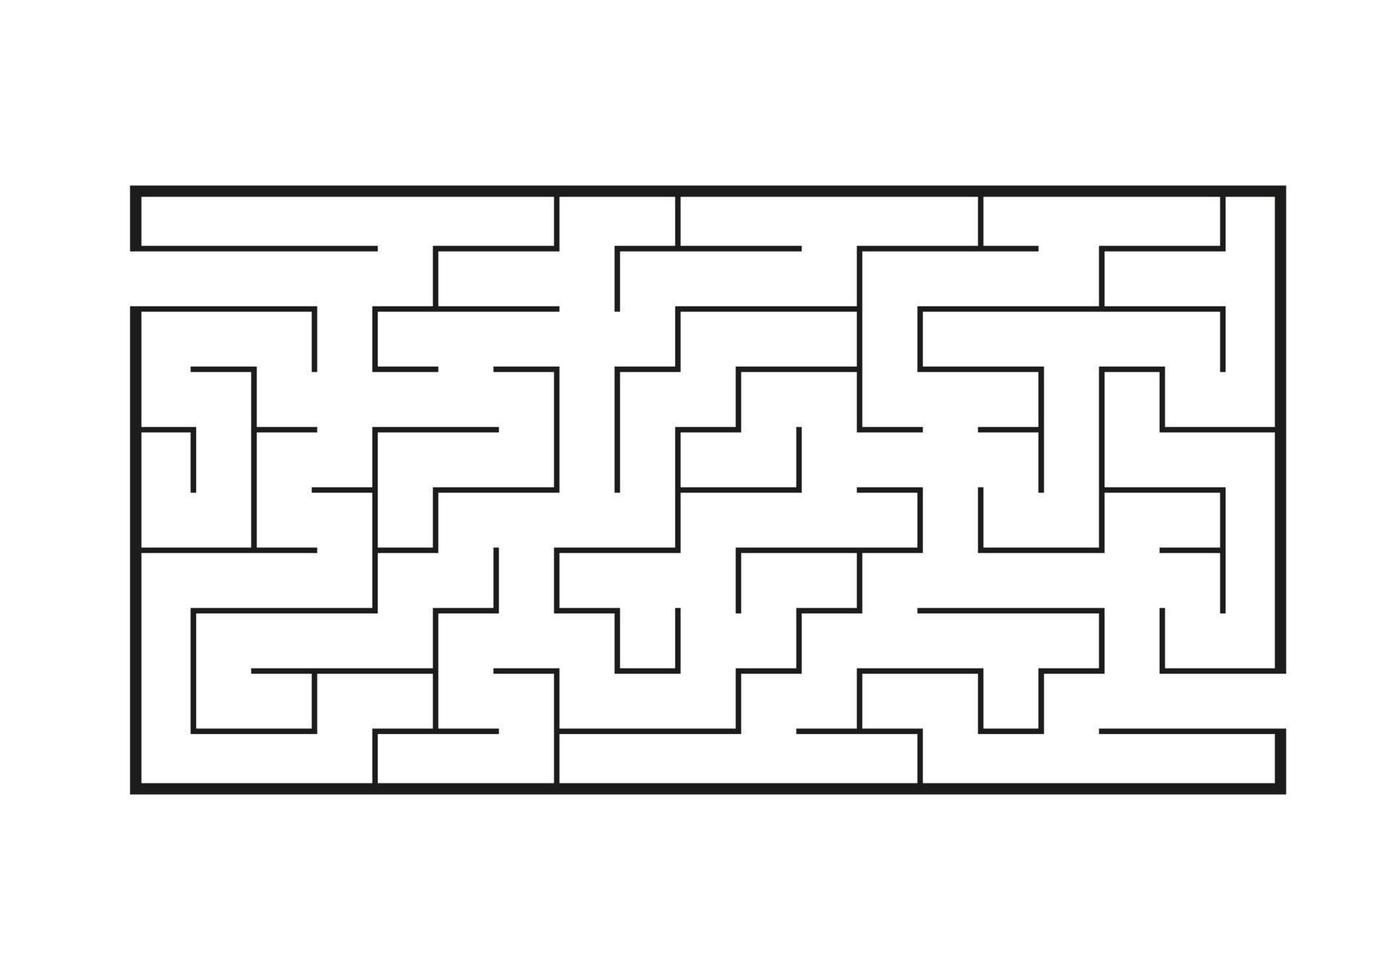 labyrinthe rectangulaire noir. jeu pour les enfants. casse-tête pour les enfants. énigme du labyrinthe. illustration vectorielle plane isolée sur fond blanc. vecteur